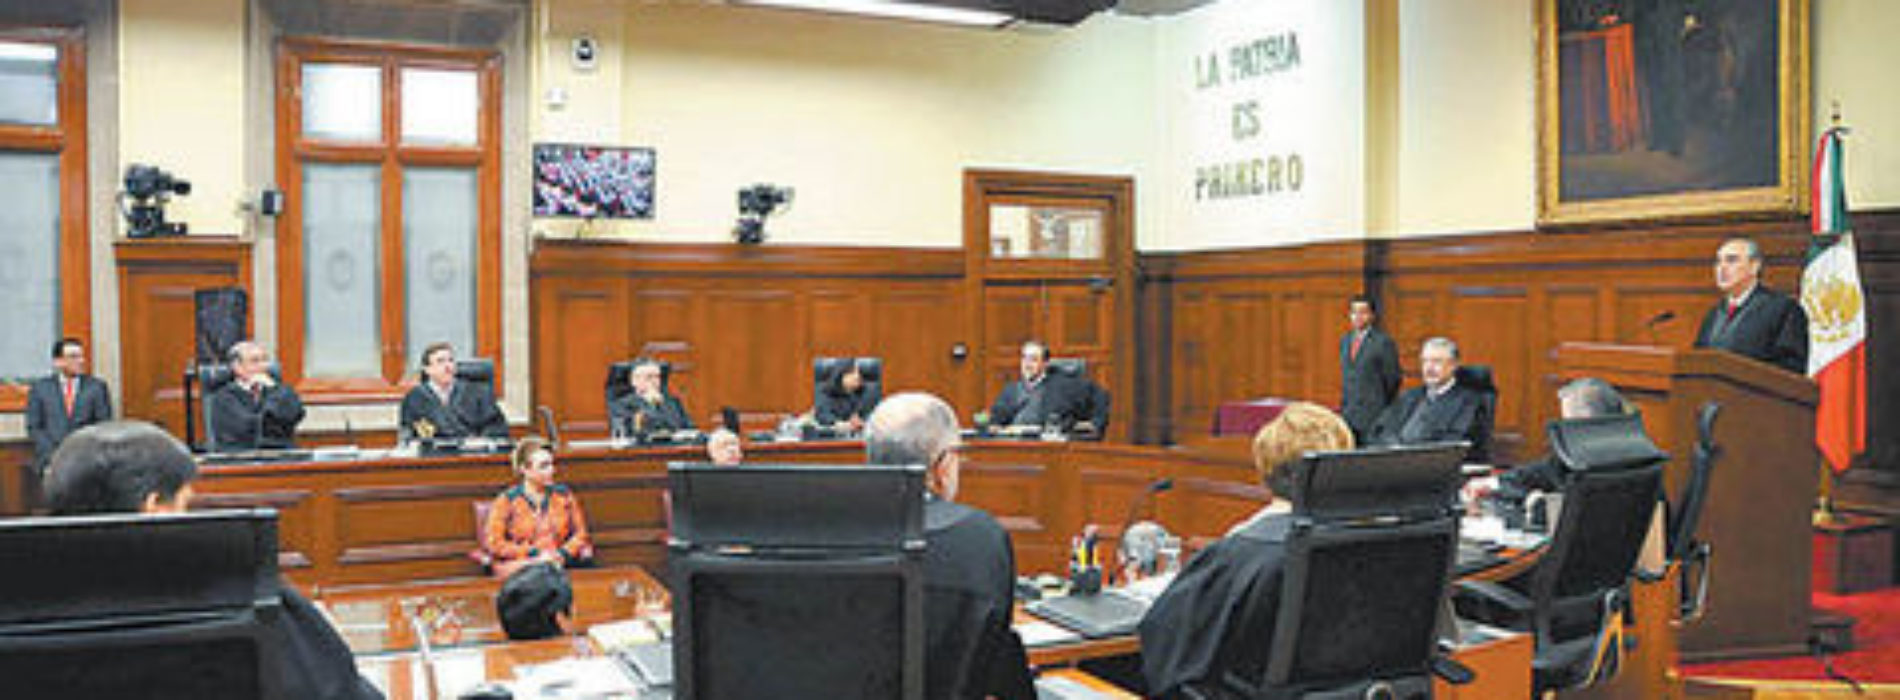 Jueces, no exentos de corrupción e impunidad: Corte